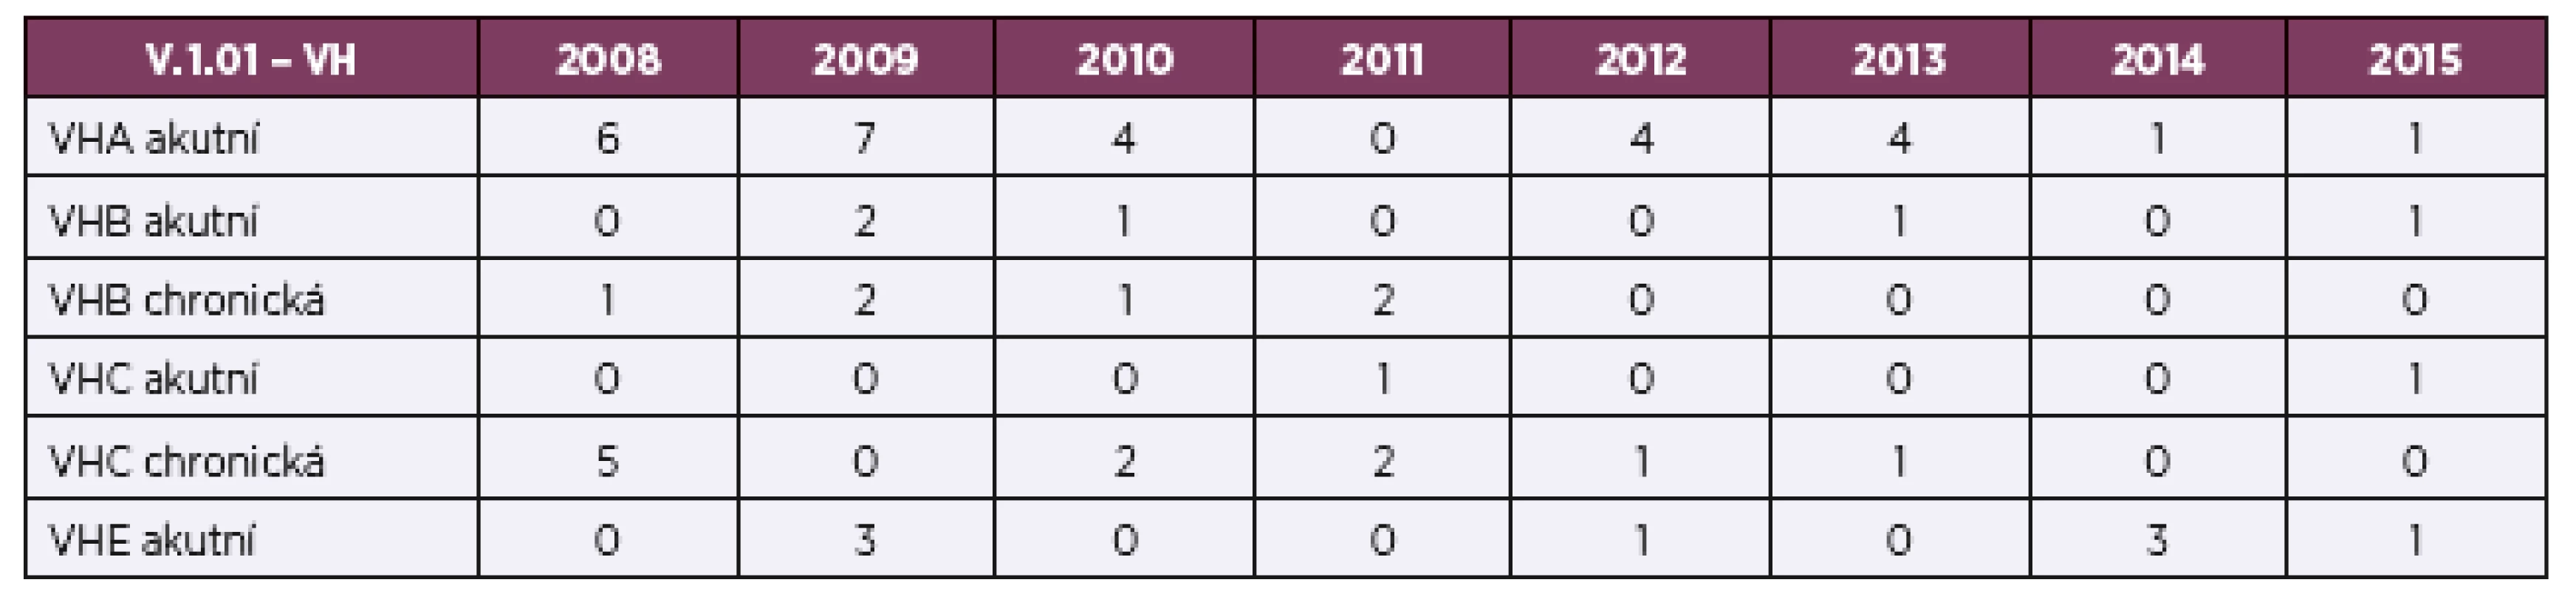 Výskyt virových hepatitid ve zdravotní a sociální péči v letech 2008–2015 (abs. čísla)